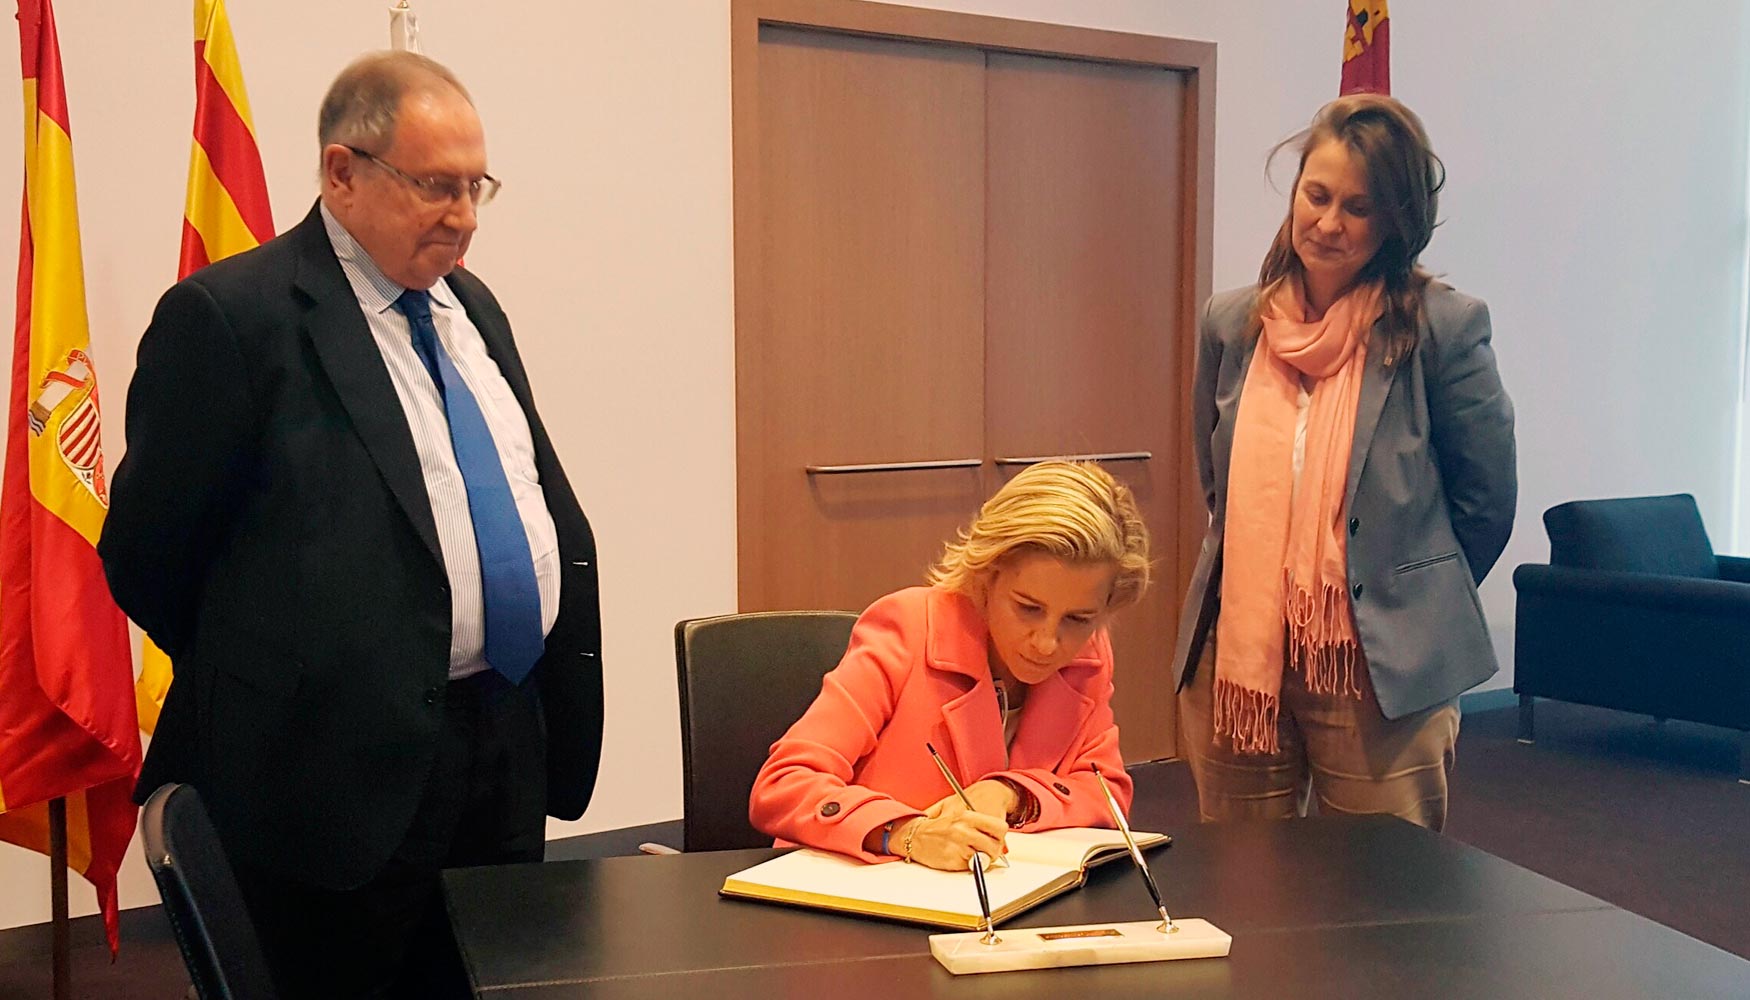 La consejera firma en el libro de honor de la feria acompaada por el presidente del consejo de administracin de Fira Barcelona...